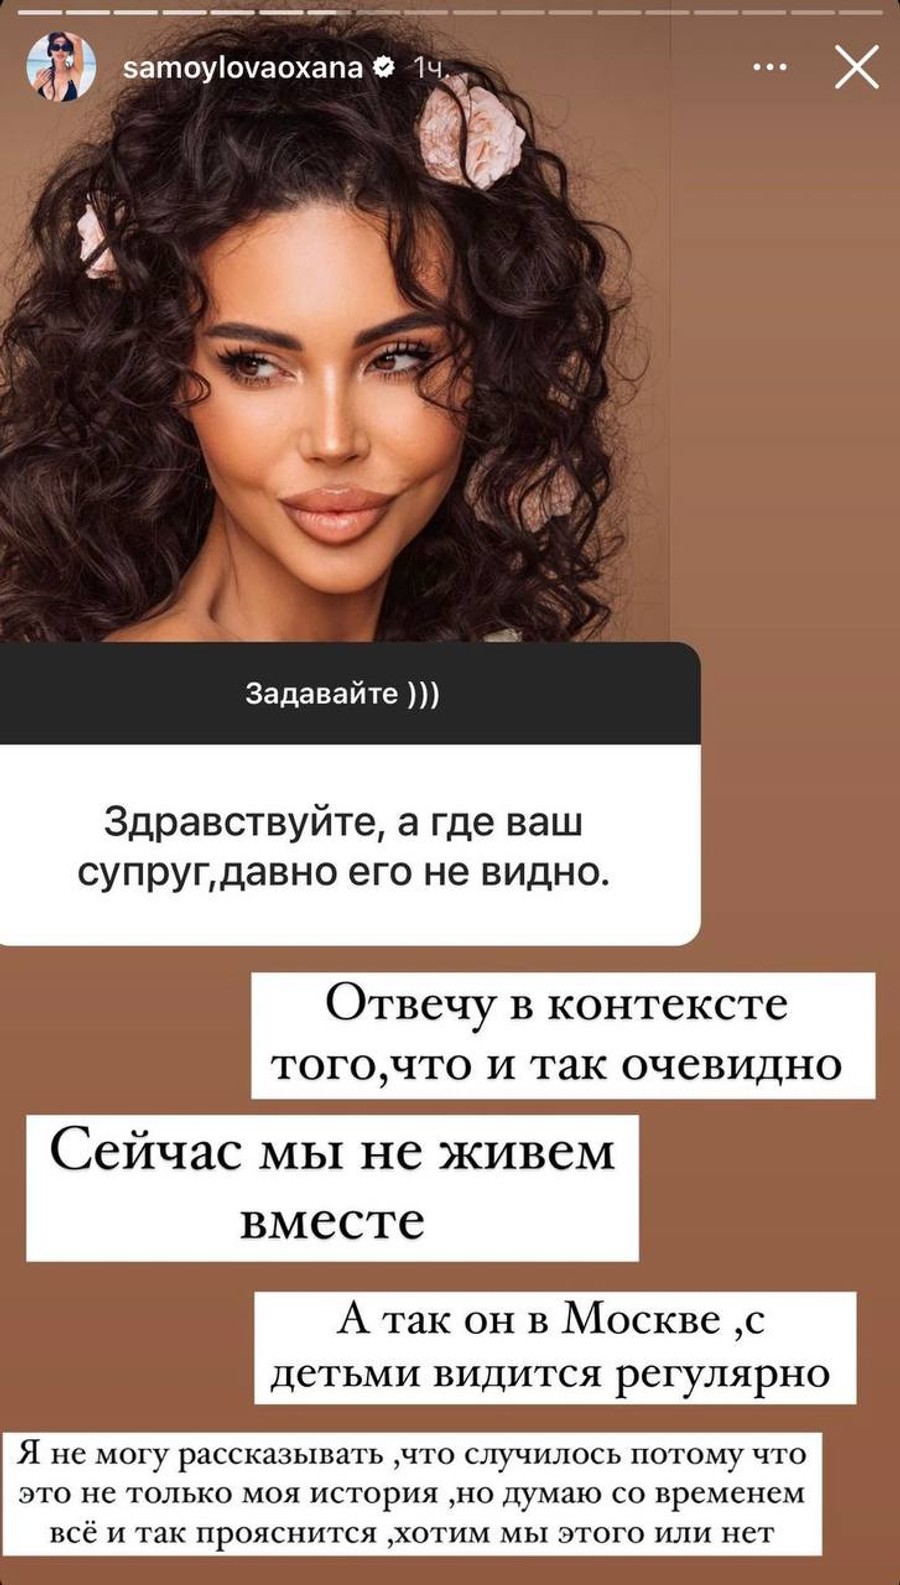 Оксана Самойлова прокомментировала отношения с мужем
Фото: Инстаграм (запрещен в РФ) @samoylovaoxana